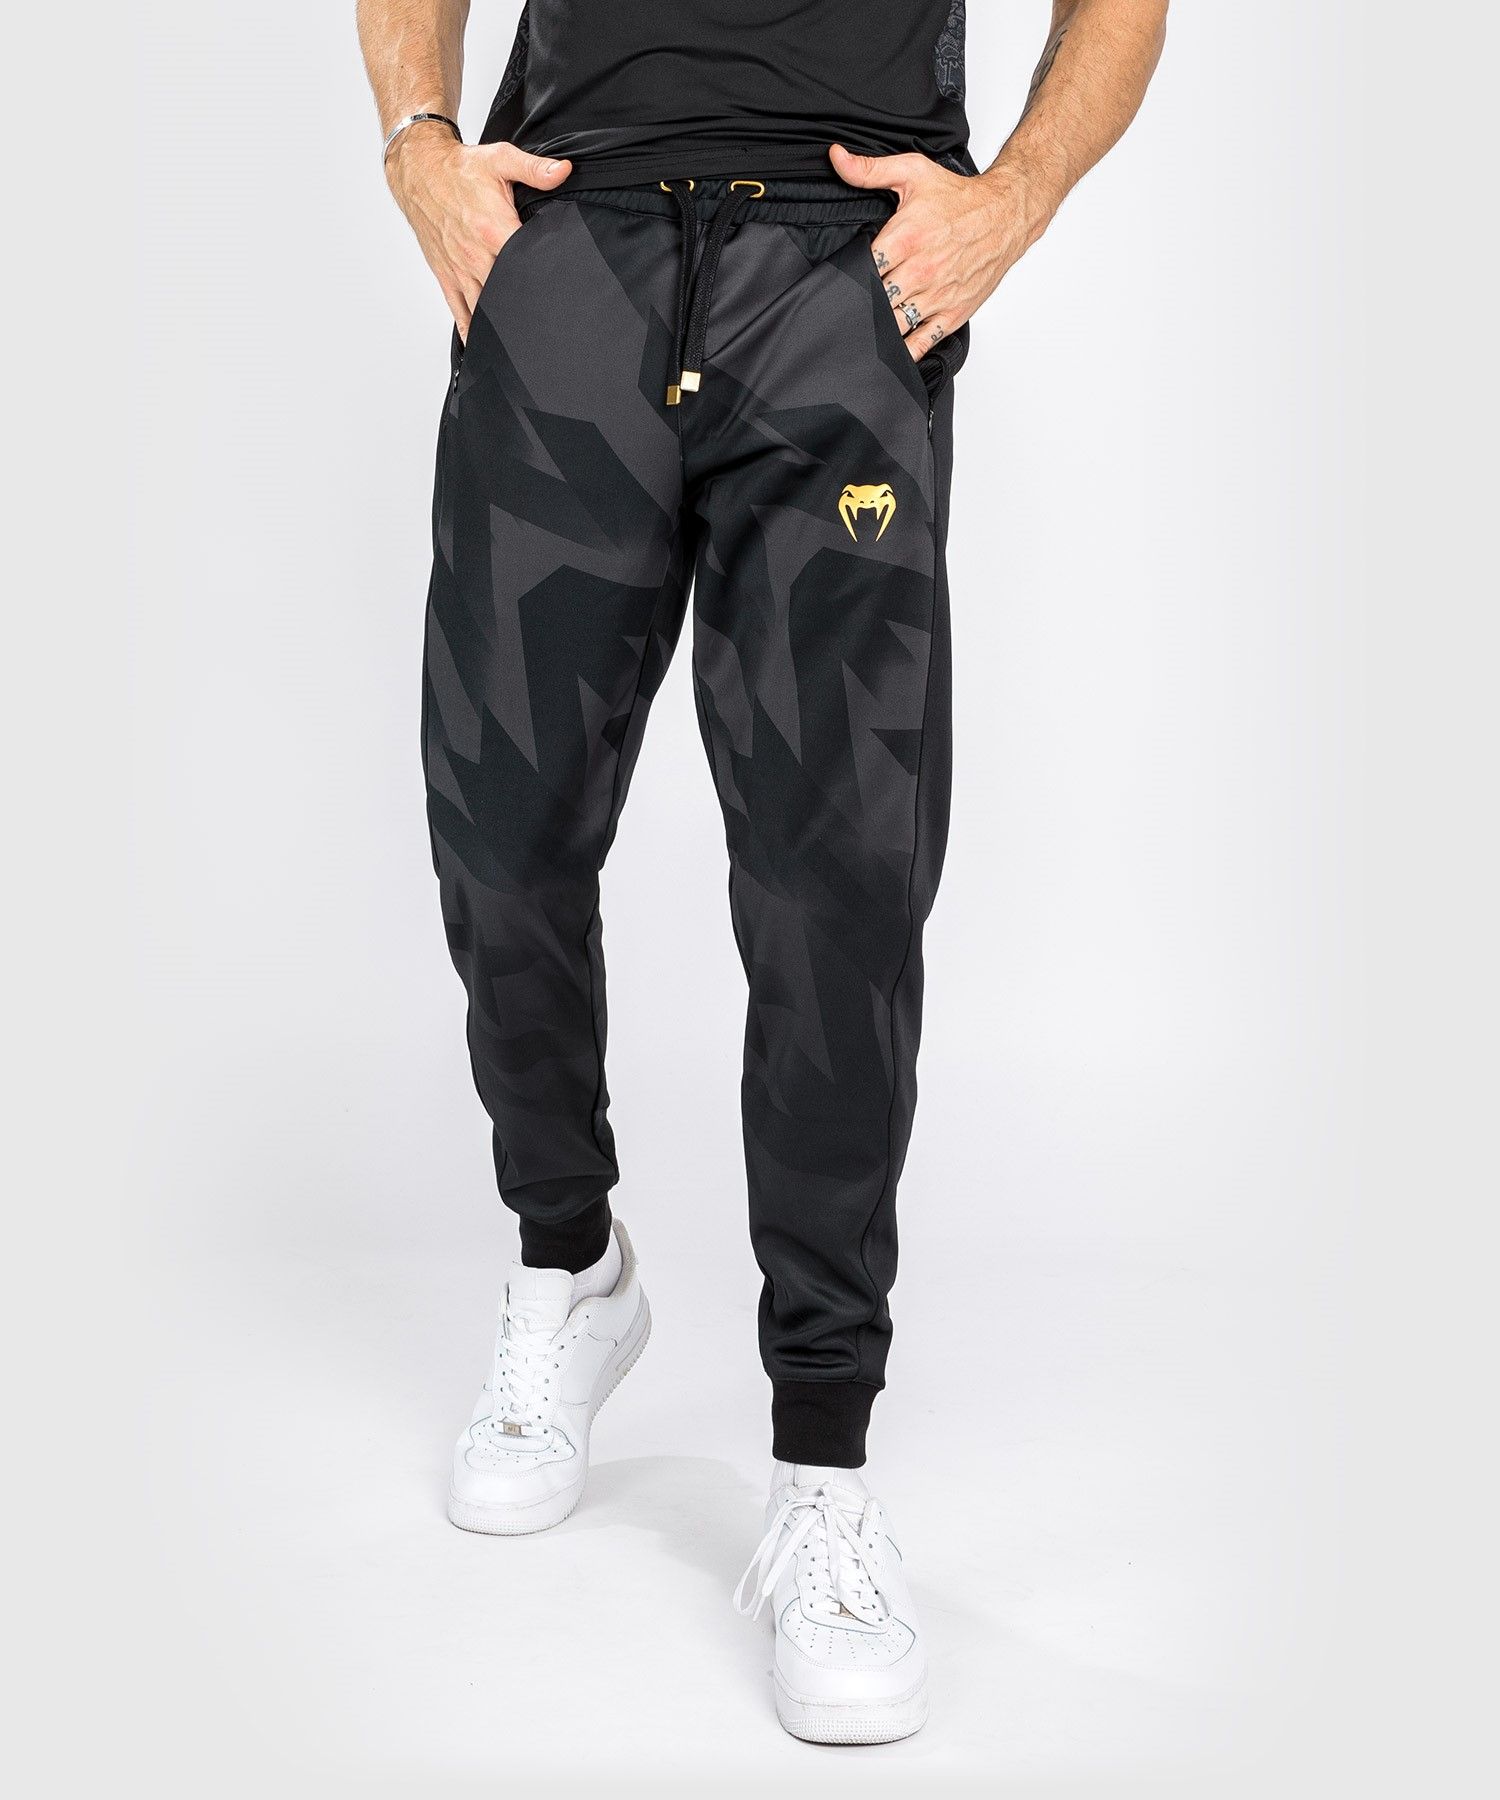 Pantaloni da jogging Venum Razor - Nero/Oro